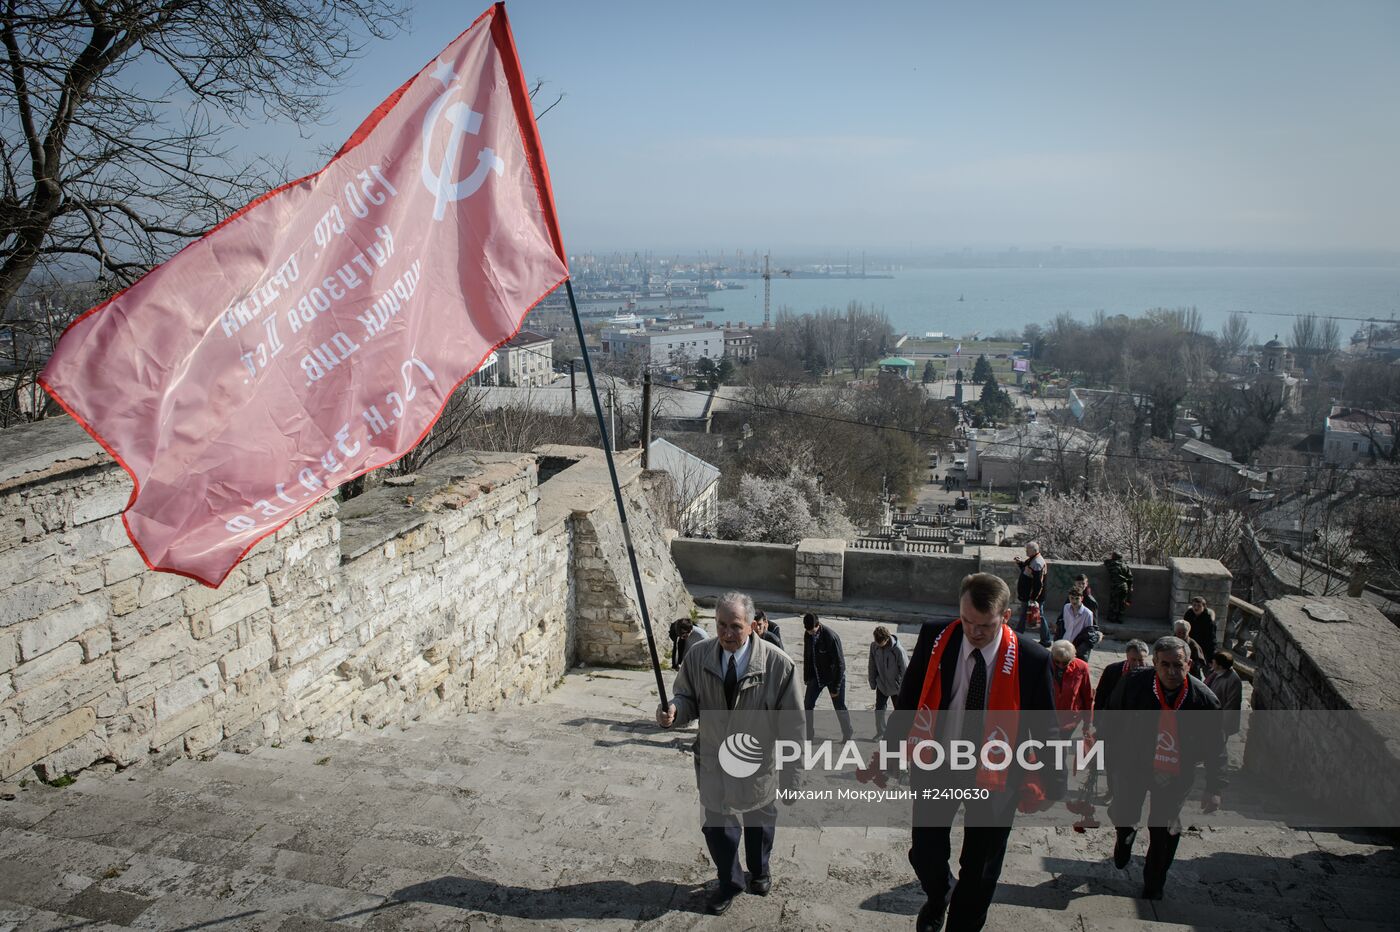 Водружение флага на гору Митридат в Керчи